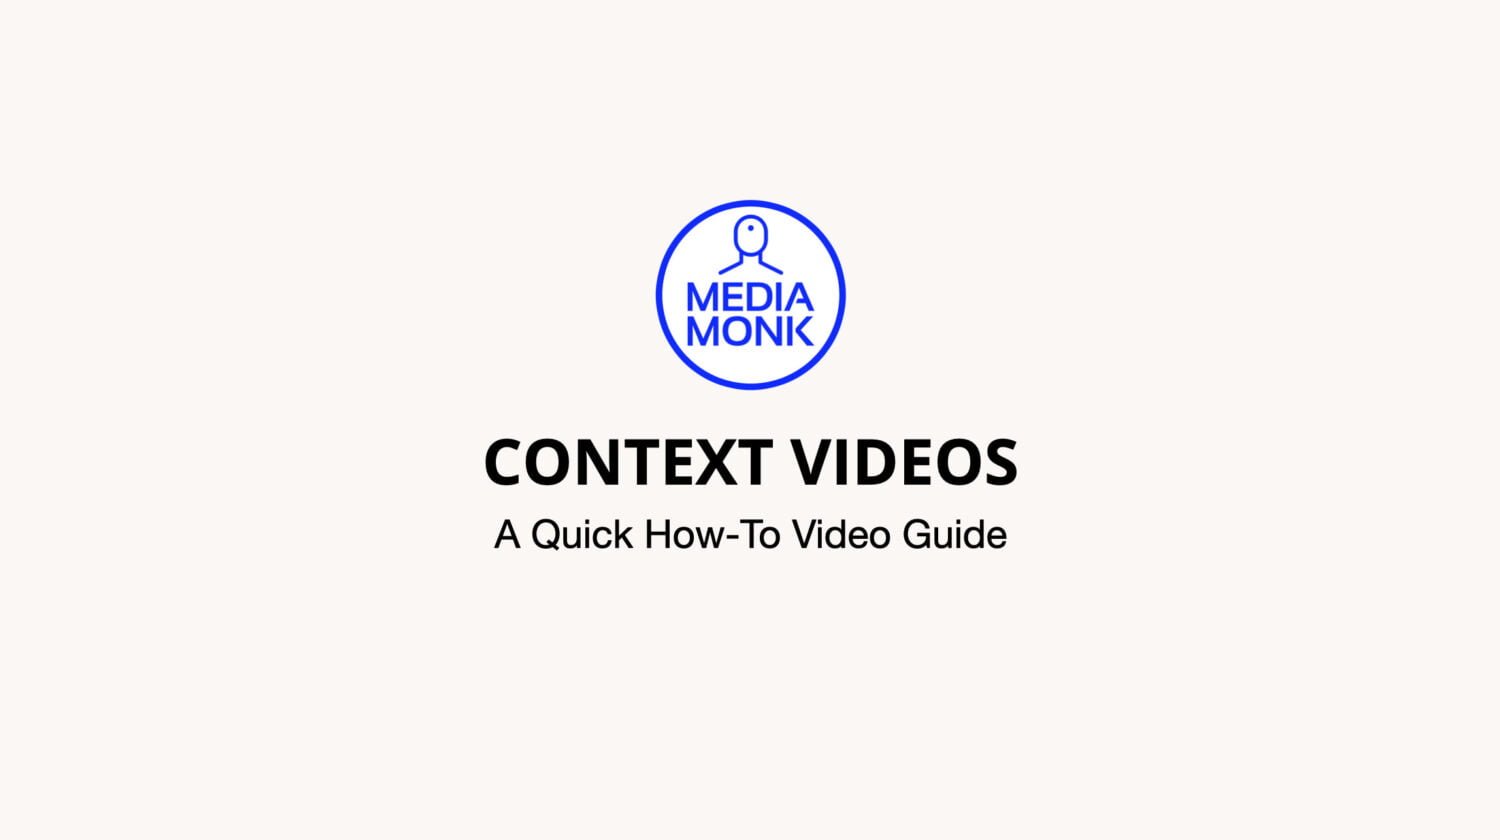 Producing Context Videos